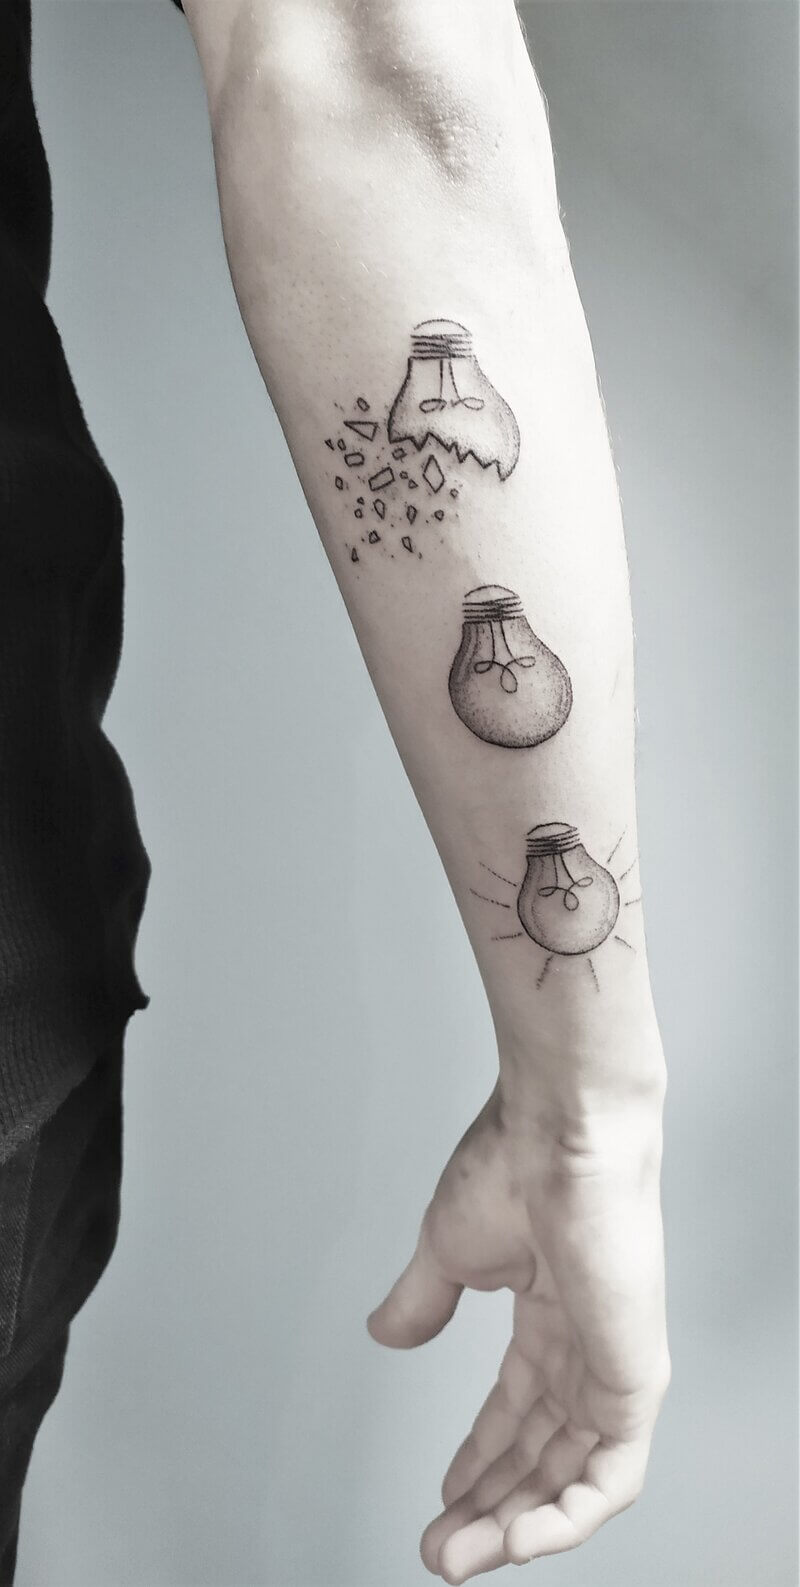 Un tatouage handpoke sur l'avant bras de 3 ampoules